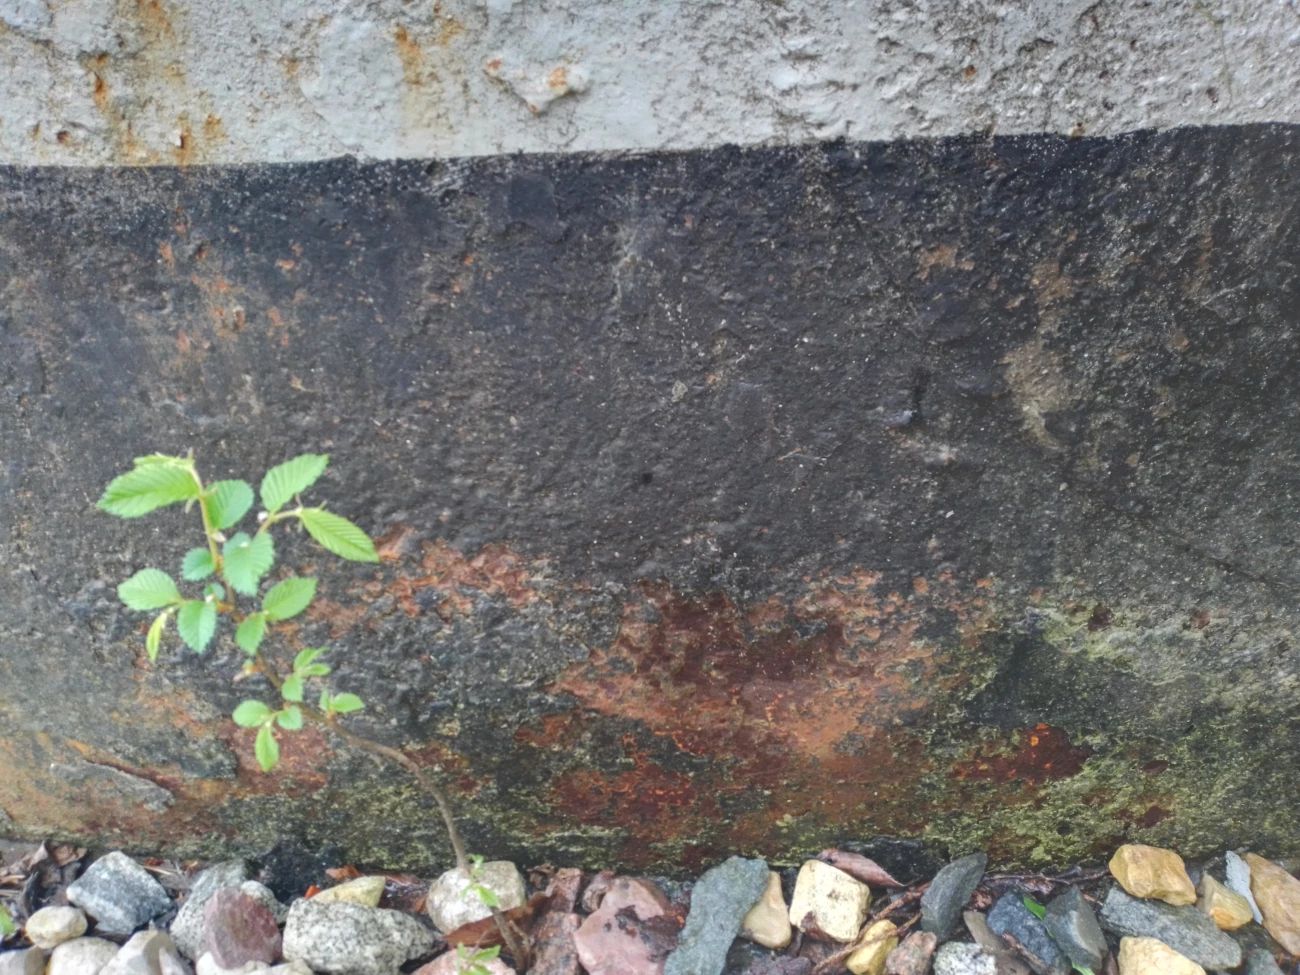 Коррозия на стенке резервуара с протечками воды и утратой 100% сечения в очаге коррозии (свищи)